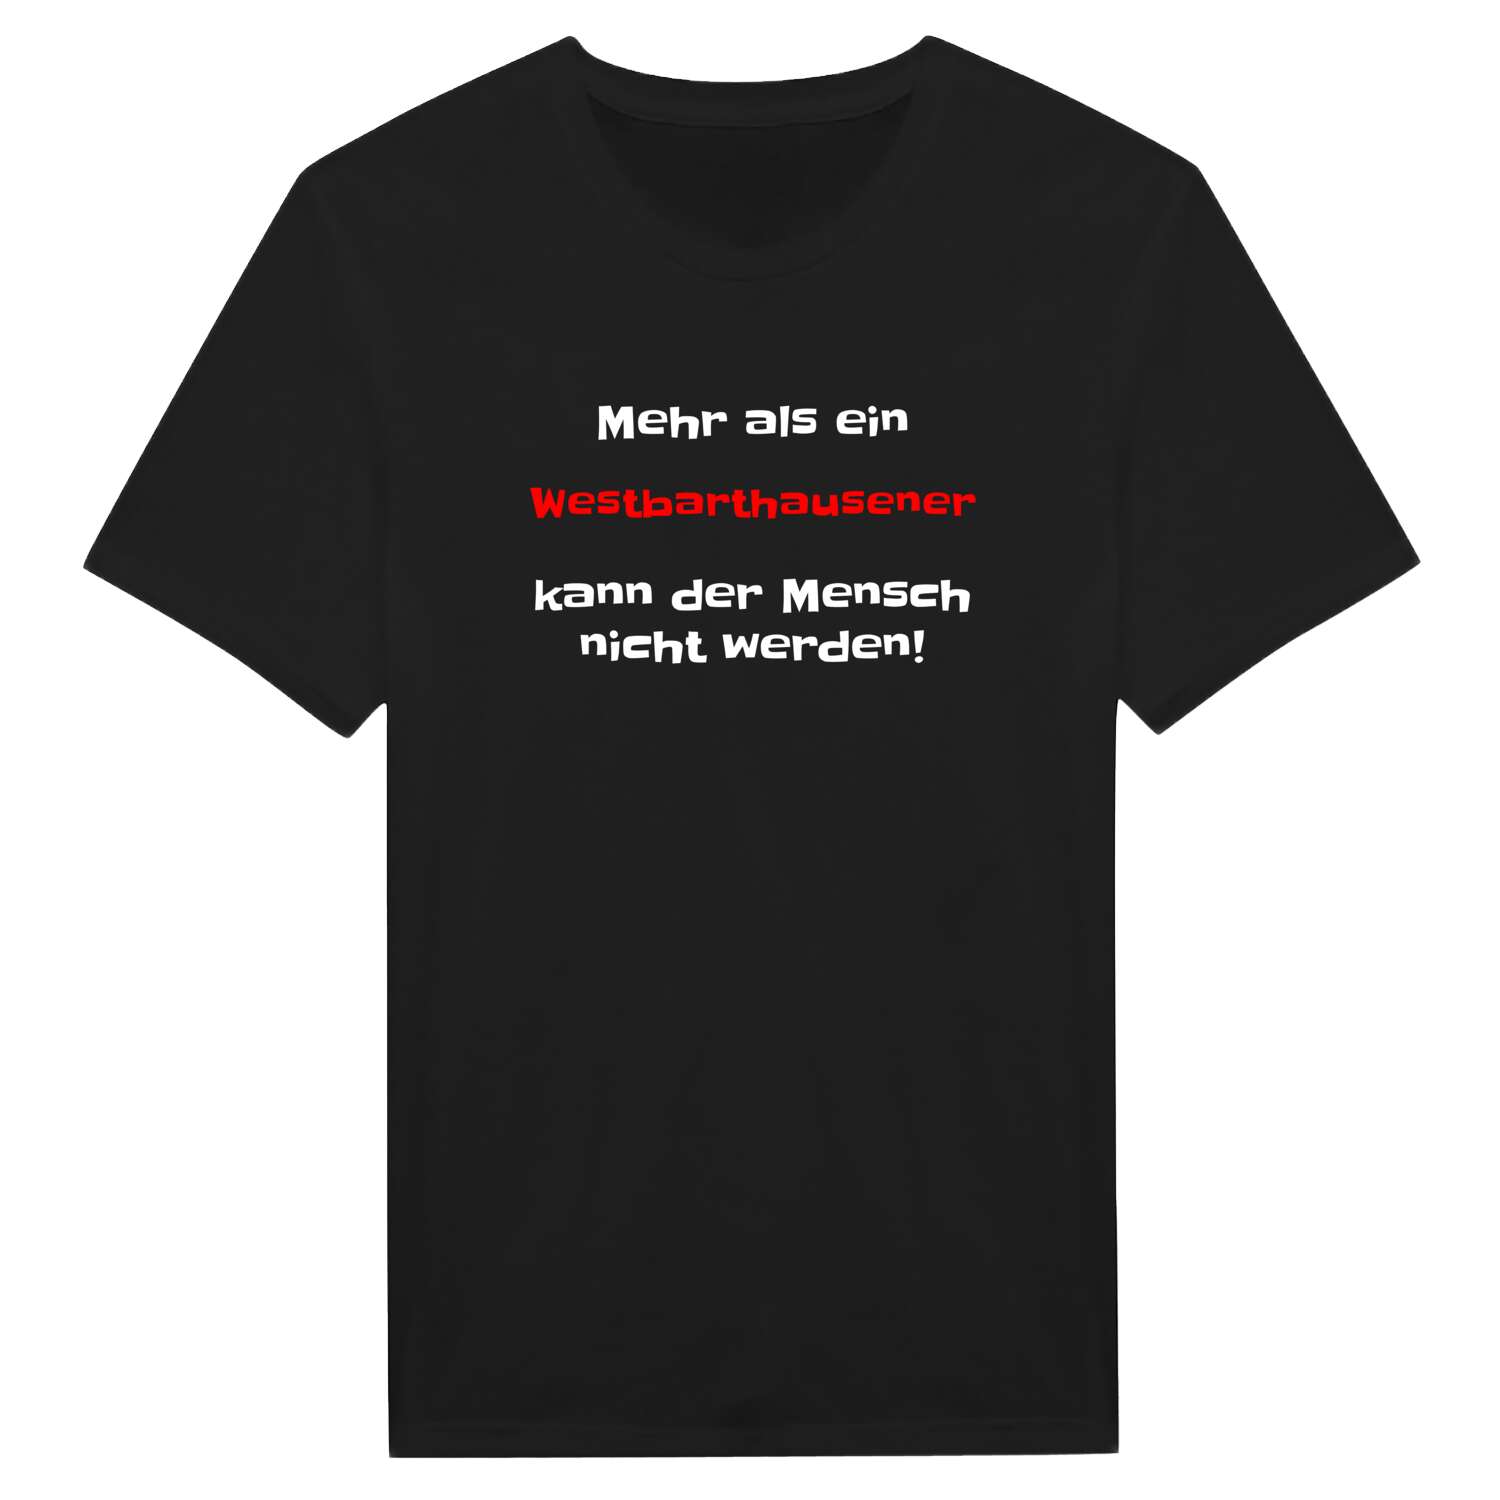 Westbarthausen T-Shirt »Mehr als ein«